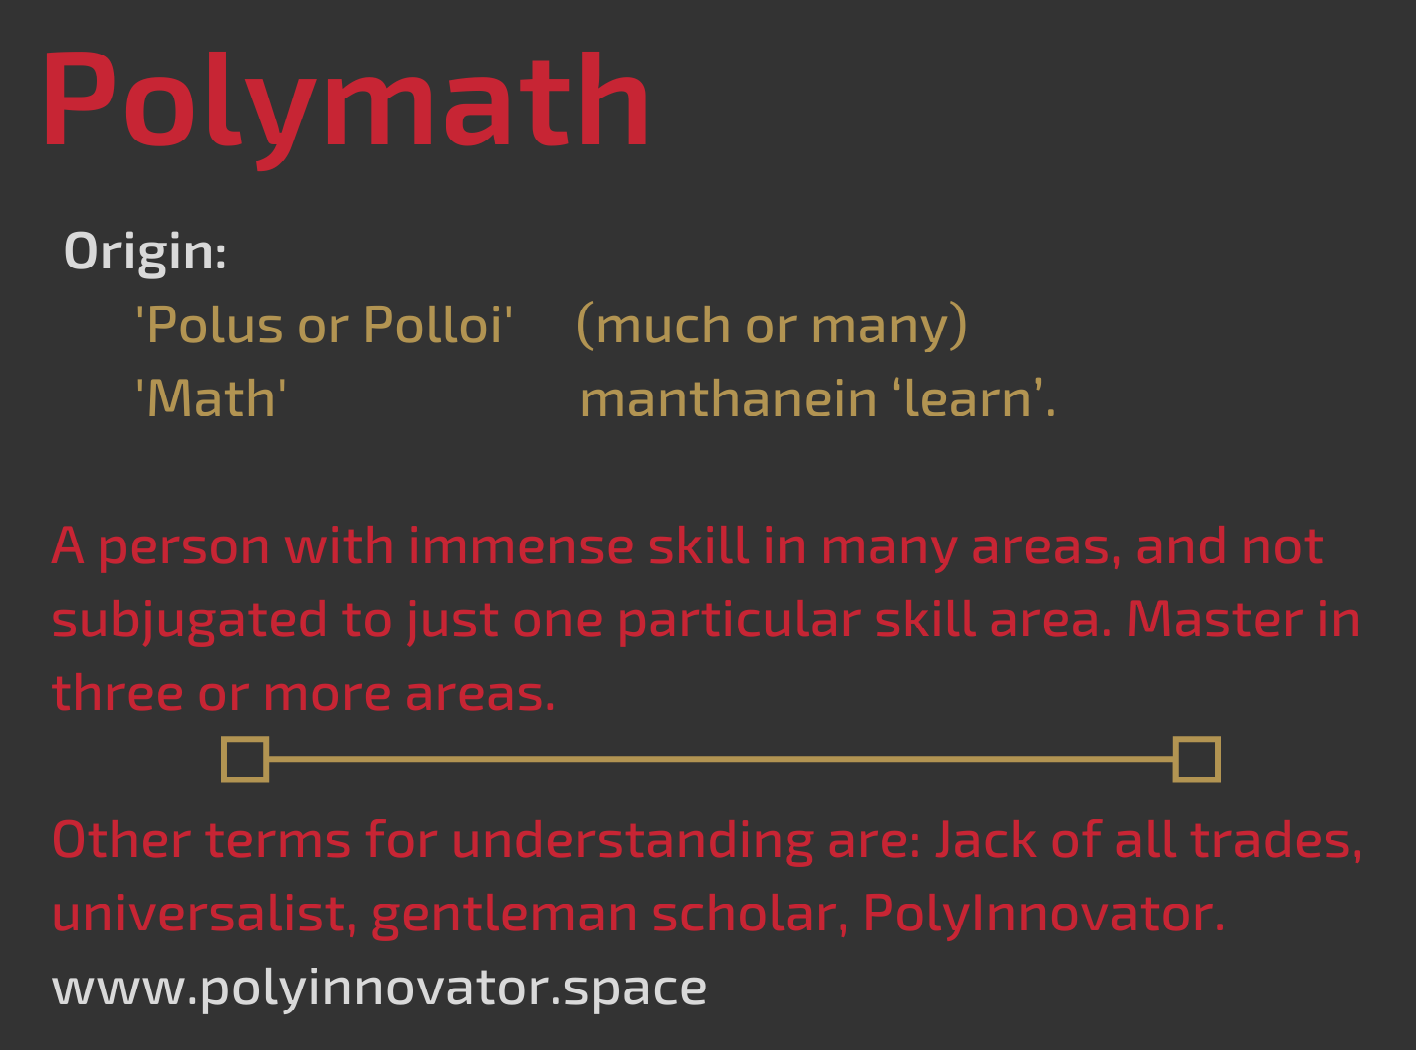 Polymath (Definition)